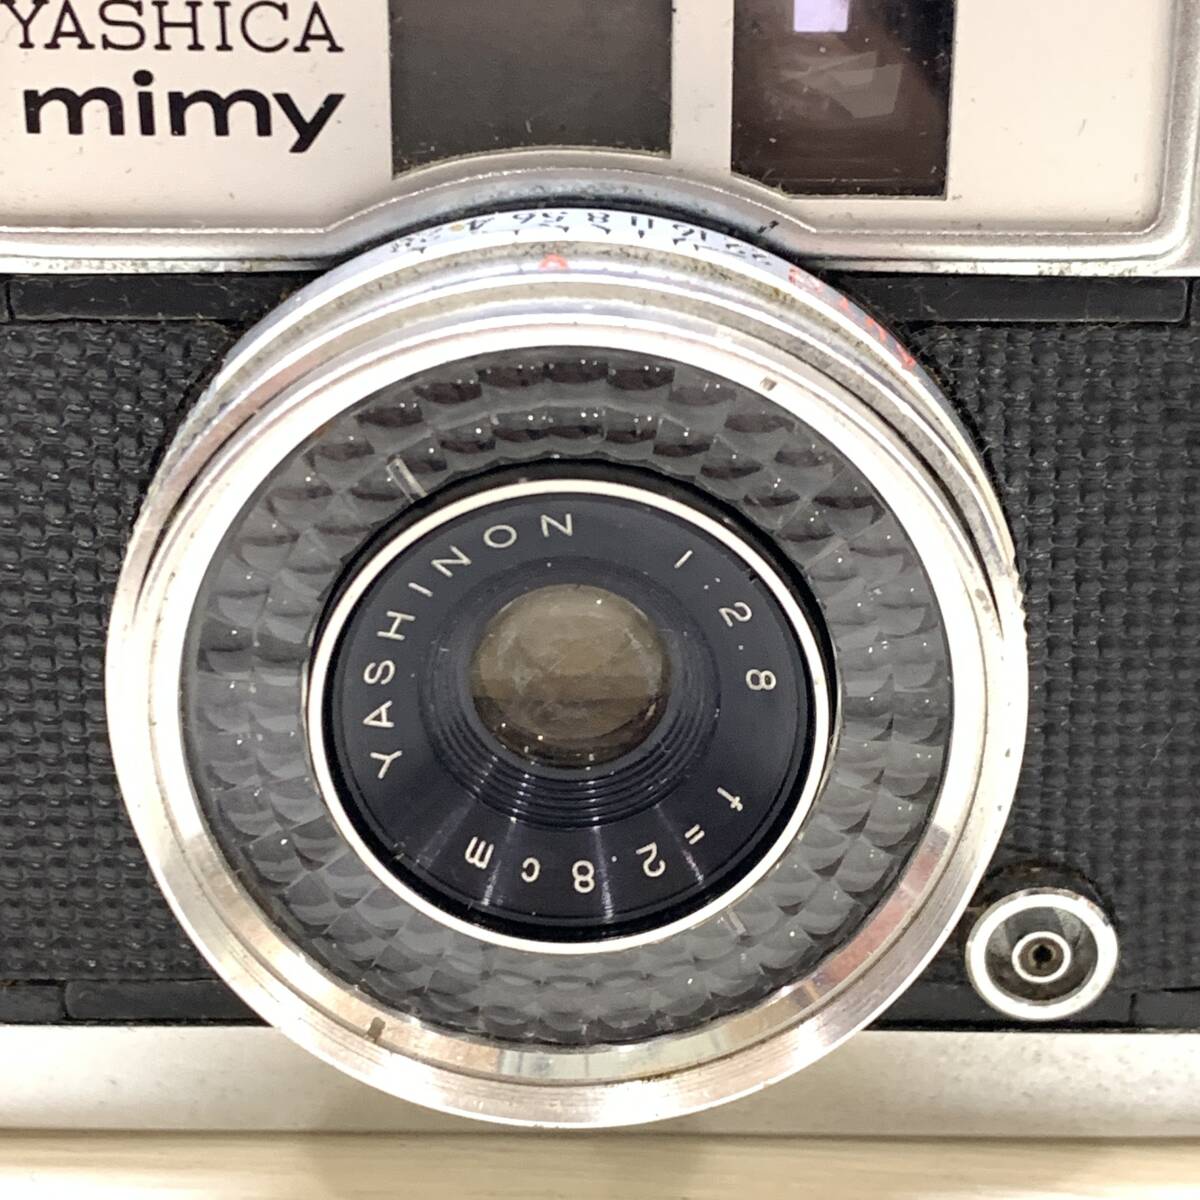 ■YASHICA mimy ヤシカ ハーフサイズカメラ レンズ YASHINON 1:2.8 f=2.8㎝ レンジファインダー フィルムカメラ ジャンク品■R41688の画像3